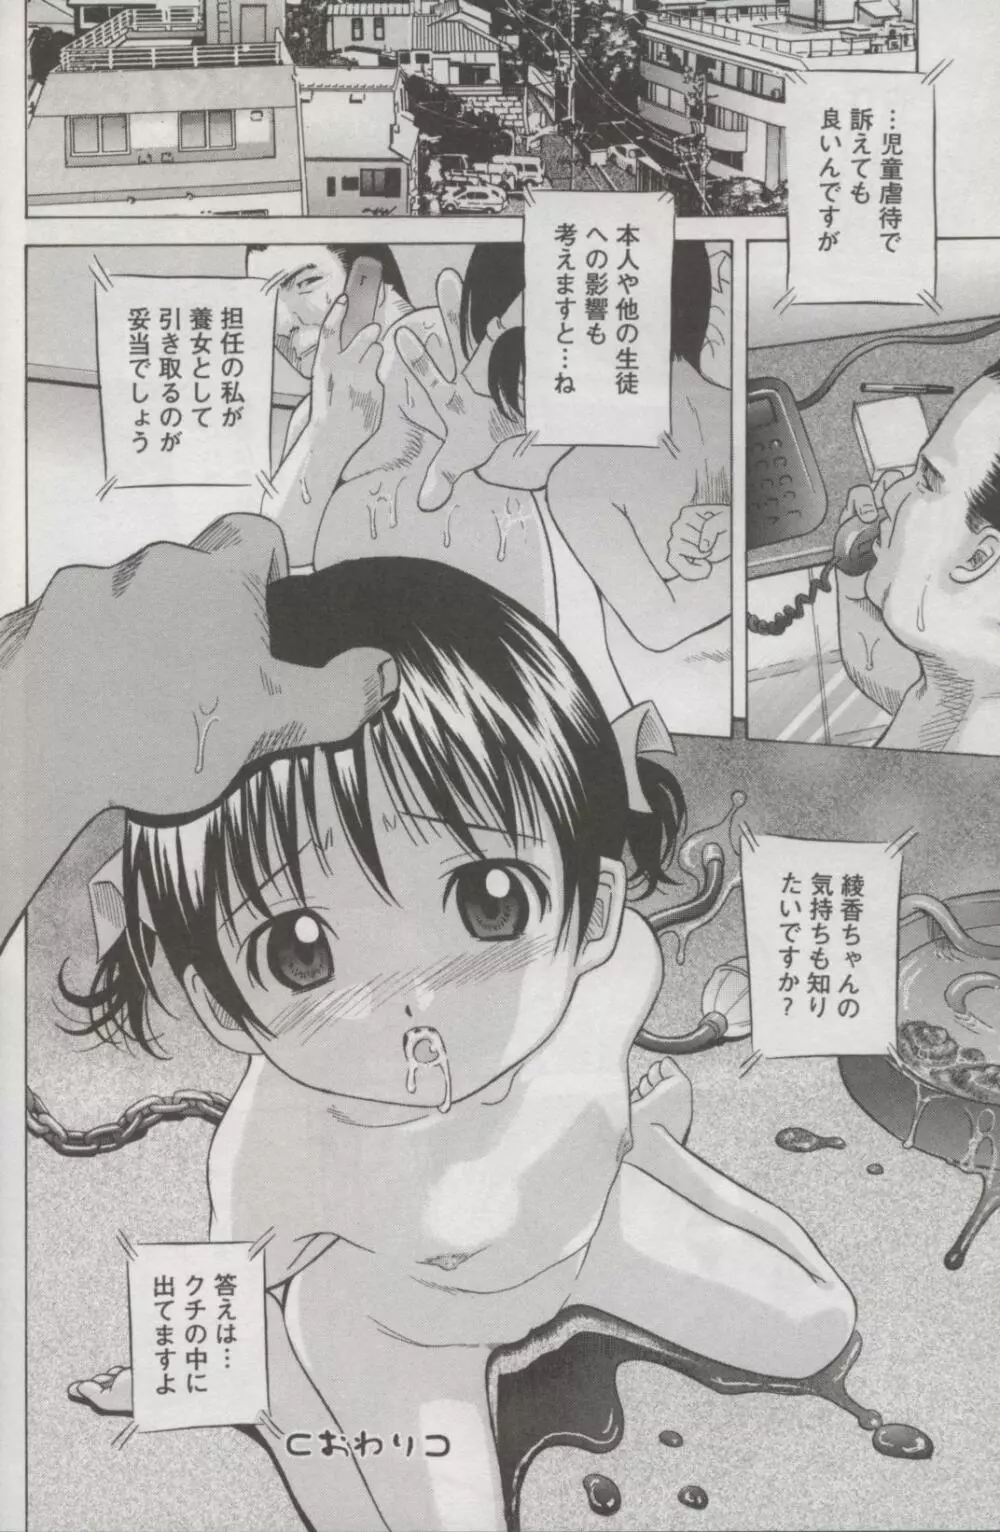 Kotori-kan Vol 3 19ページ